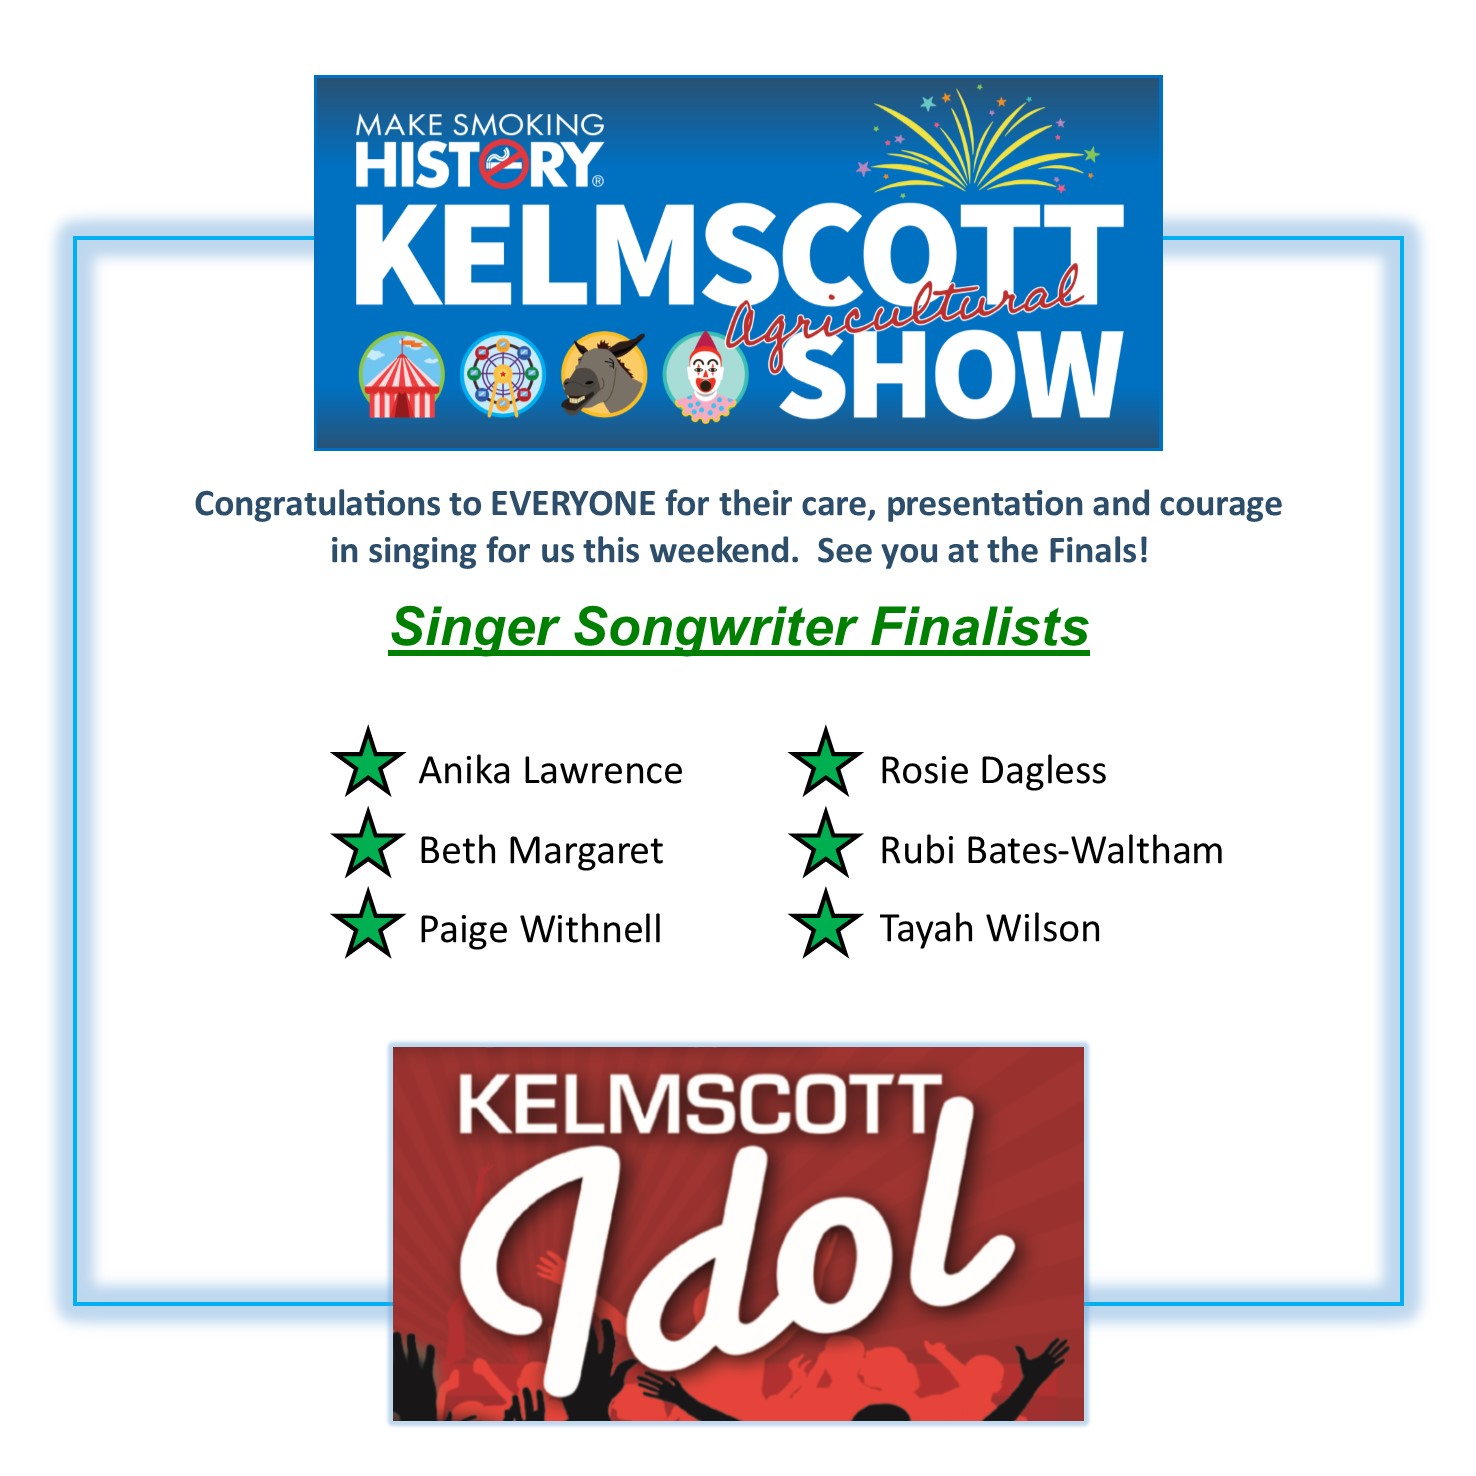 Kelmscott Idol Singer Songwriters Finalists